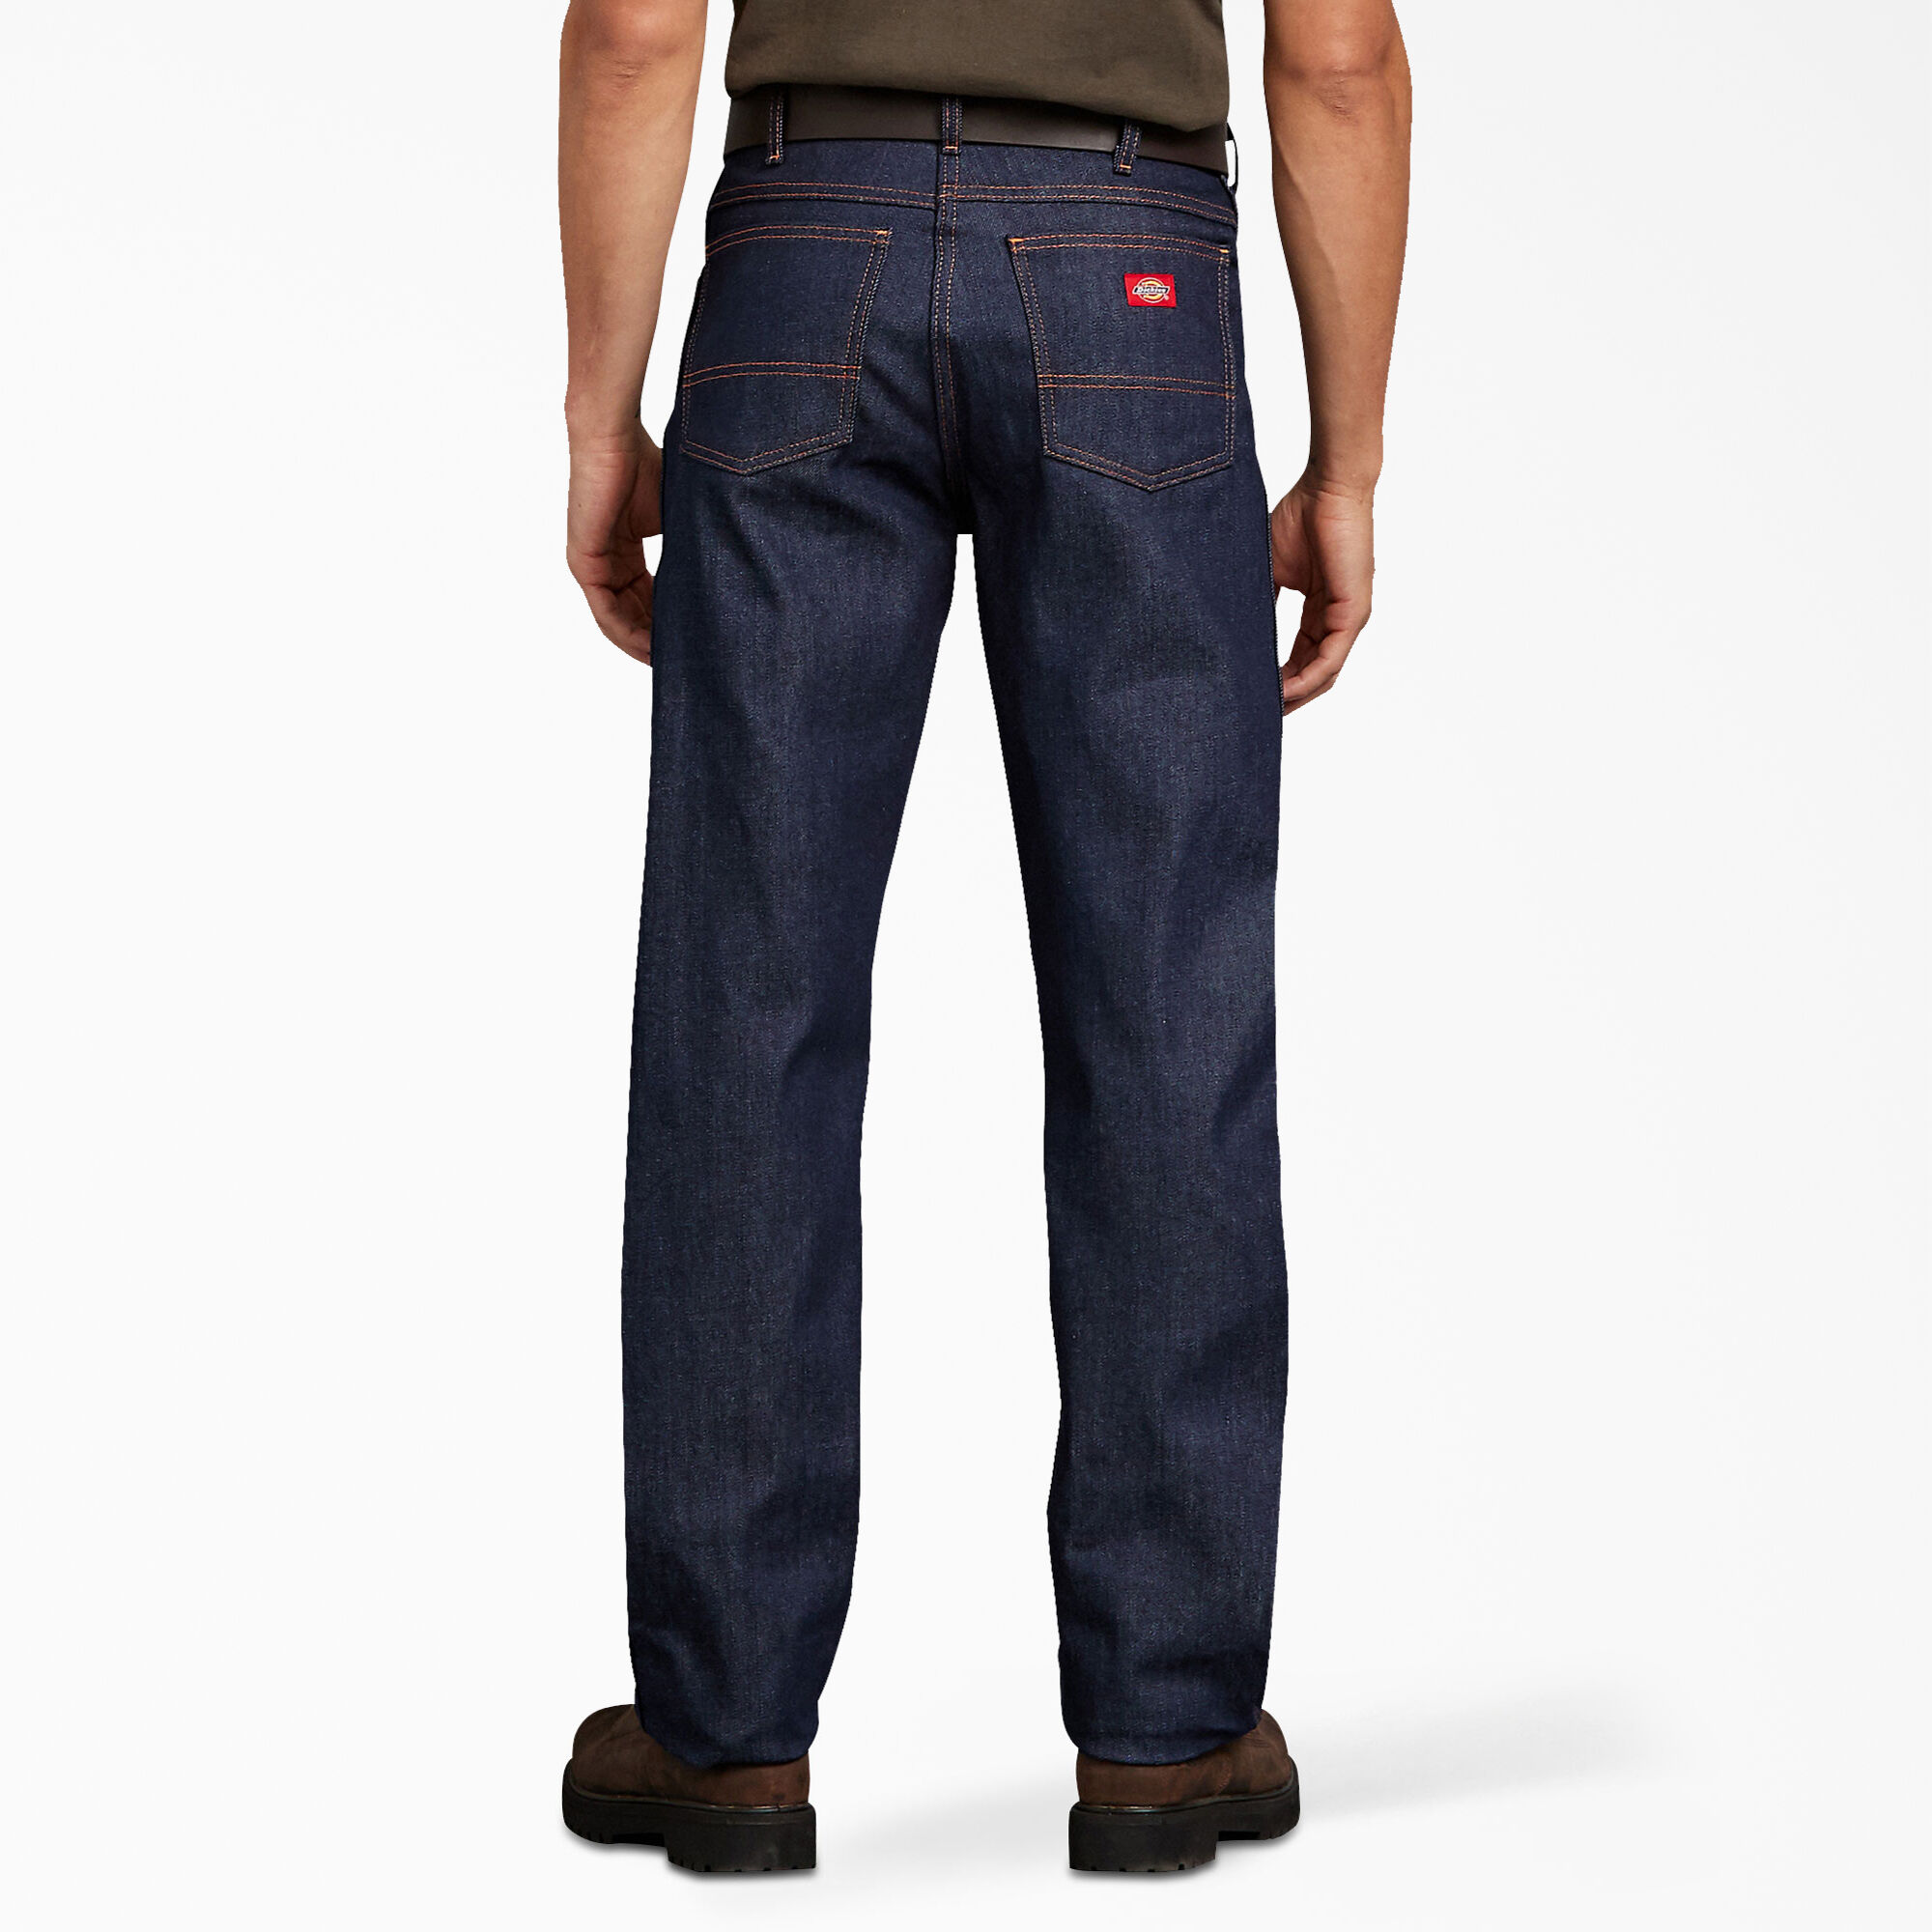 Regular Fit Jeans for Men | Dickies - Dickies US